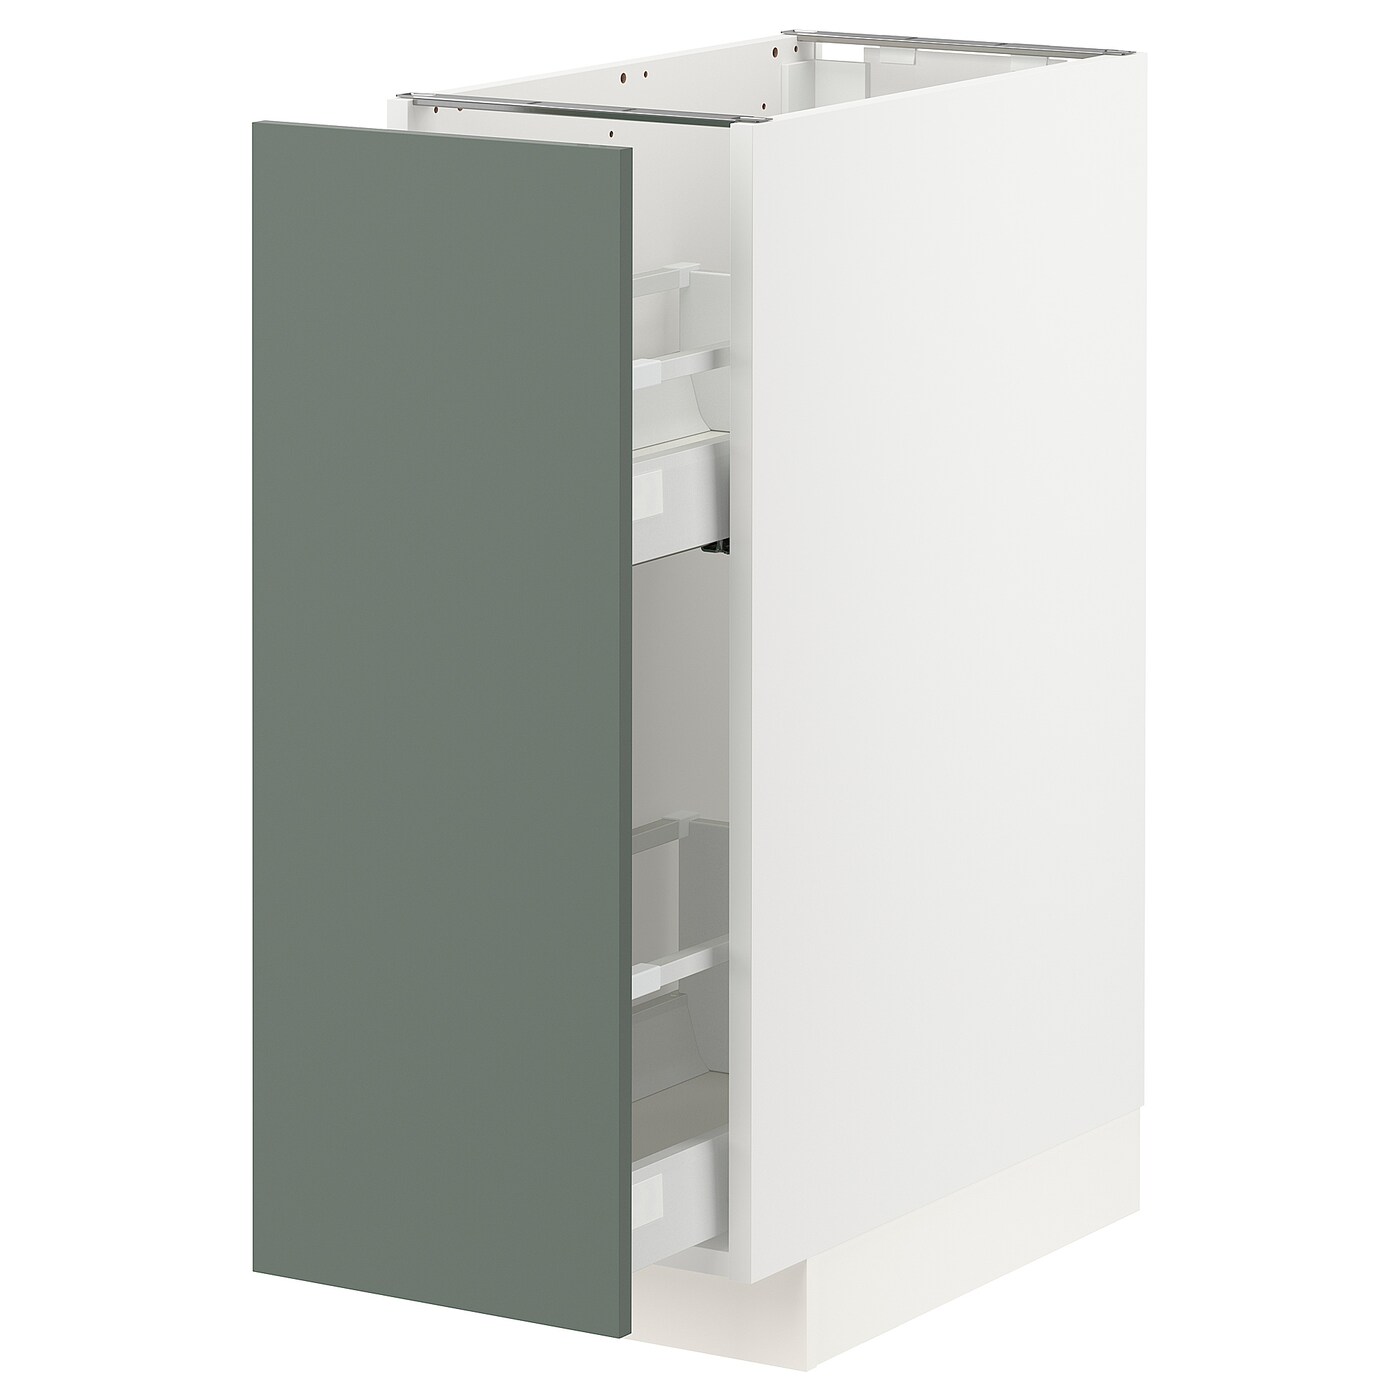 Напольный шкаф - IKEA METOD MAXIMERA, 88x62x30см, белый/серо-зеленый, МЕТОД МАКСИМЕРА ИКЕА